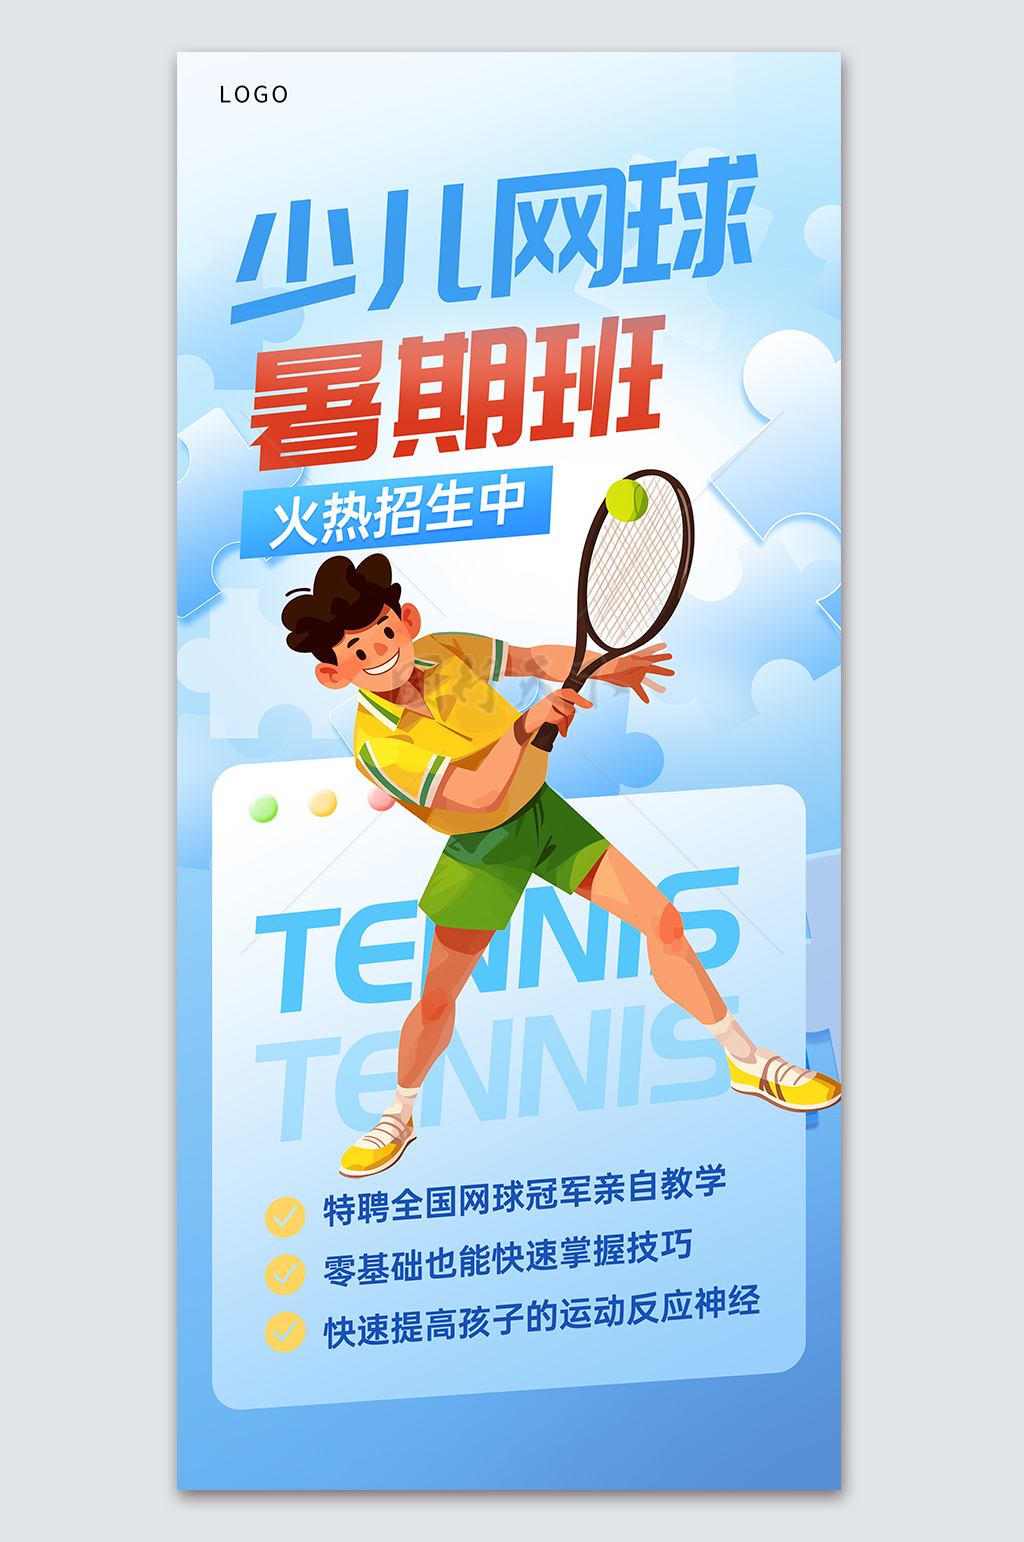 蓝色背景少儿网球暑期班火热招生中宣传海报